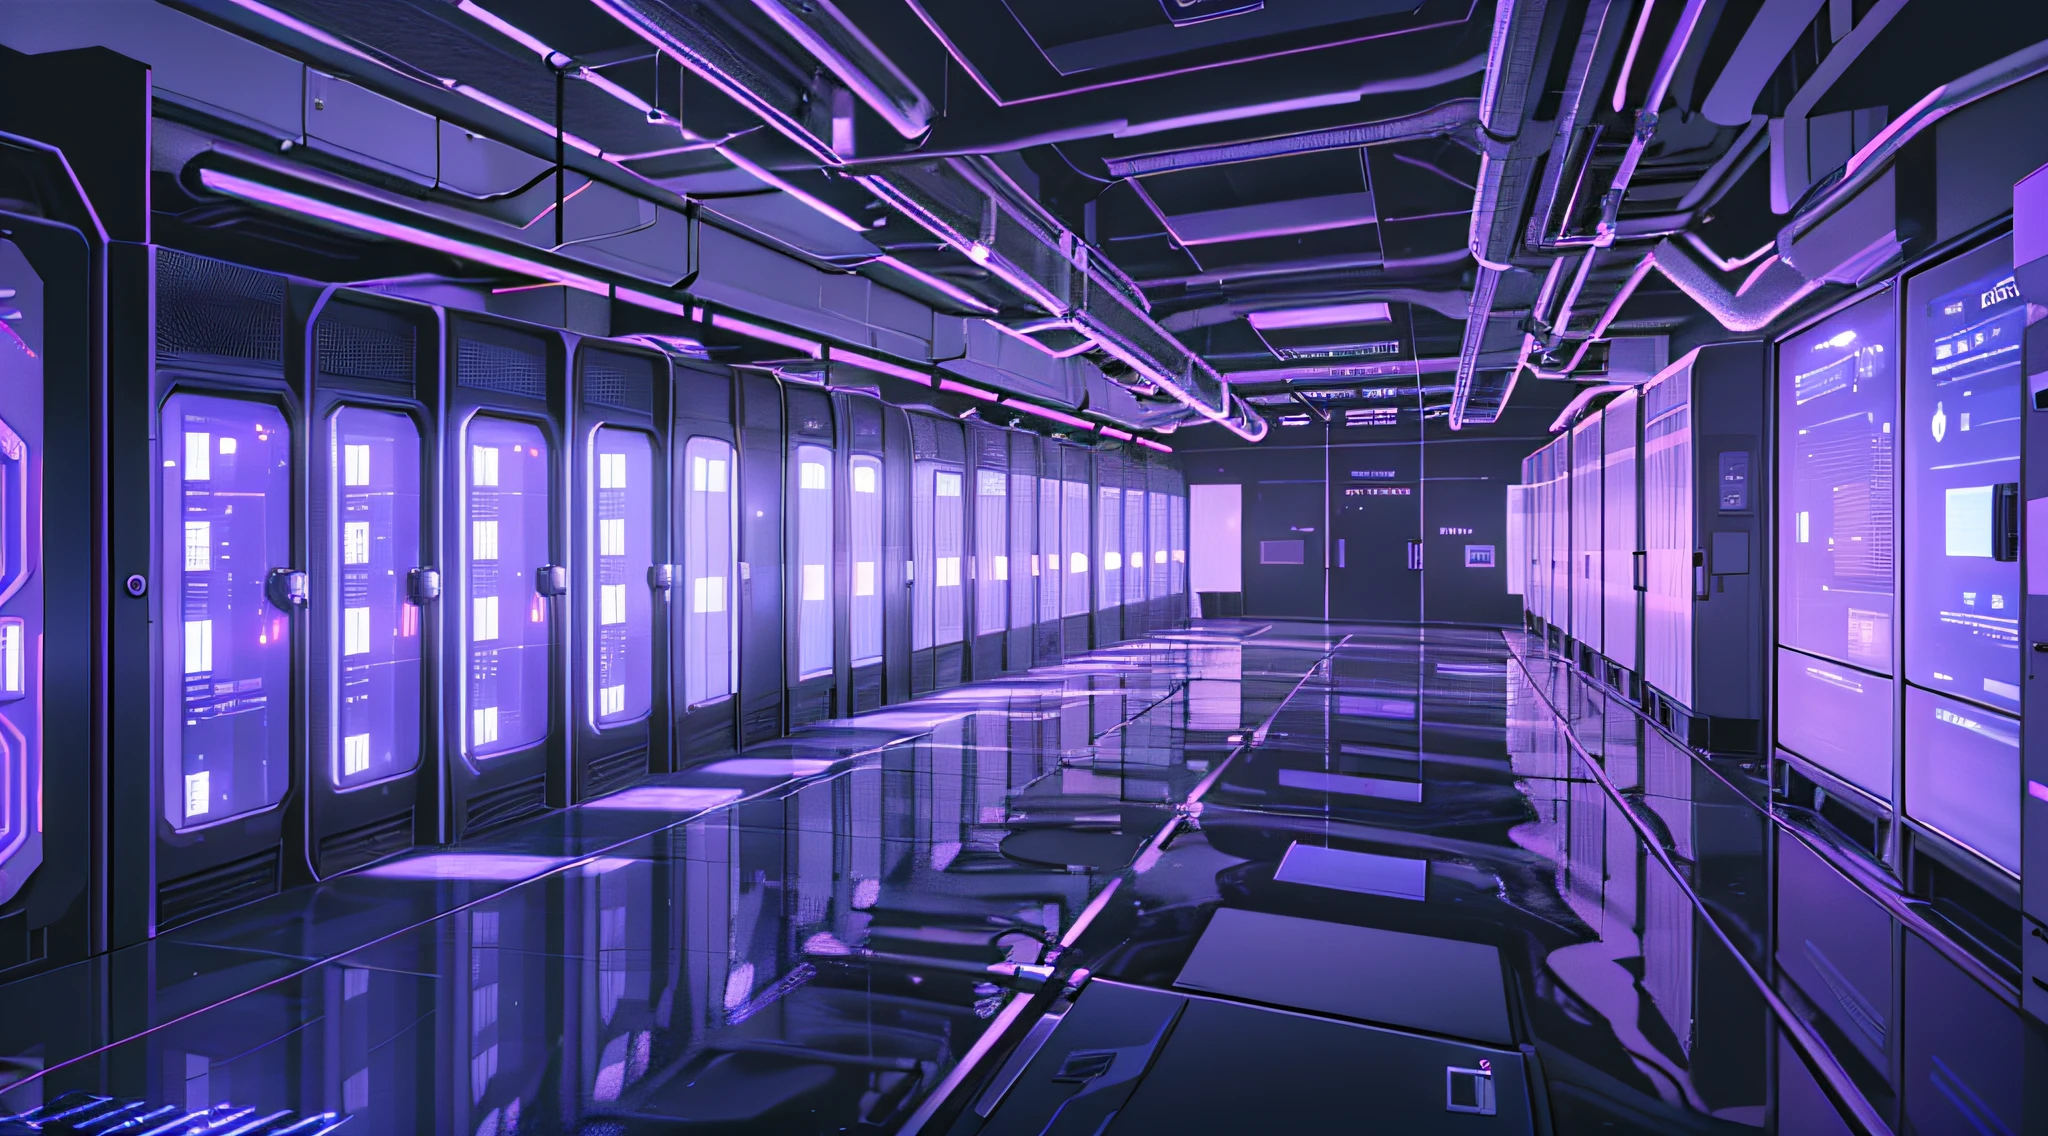 um corredor mal iluminado com fileiras de dados e telas de computador, o plano de fundo é a sala do servidor de dados, invadindo o mainframe, espaço cibernético, em data center realista, 3840x2160, 3840 x 2160, fundo do corredor da nave espacial, arquitetura cibernética, ciberespaço surreal, no data center detalhado --auto --s2